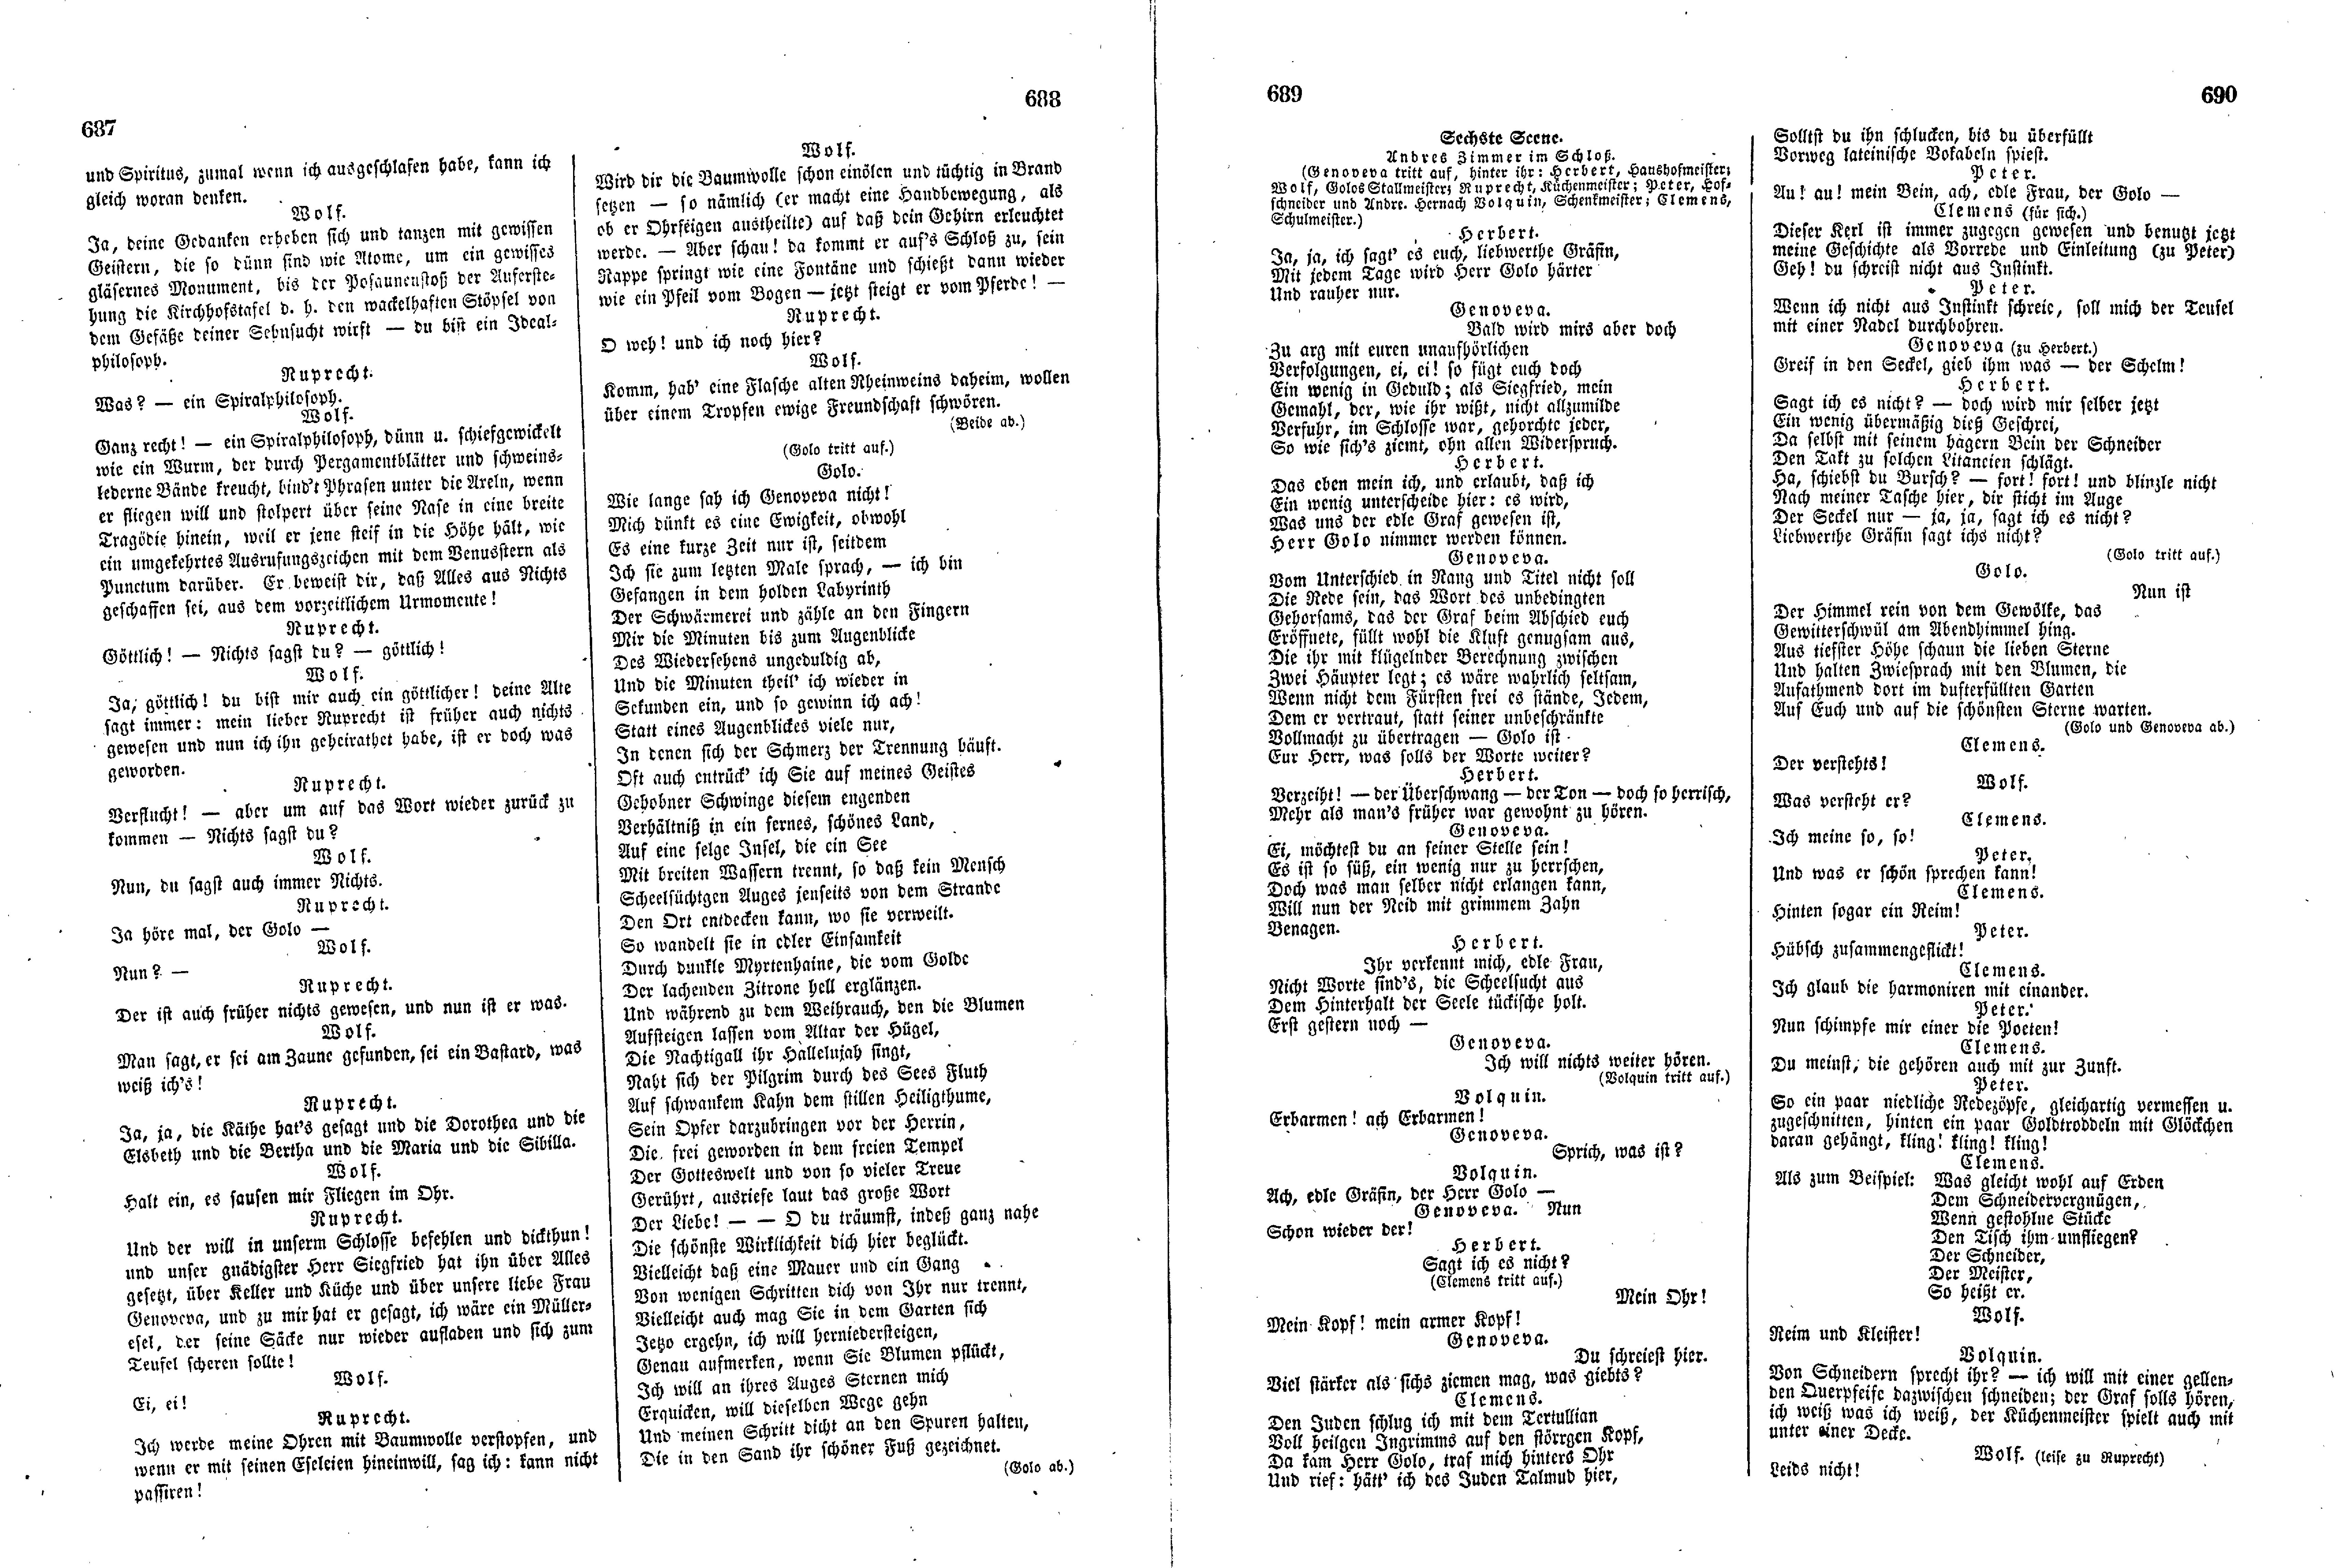 Das Inland [11] (1846) | 177. (687-690) Haupttext